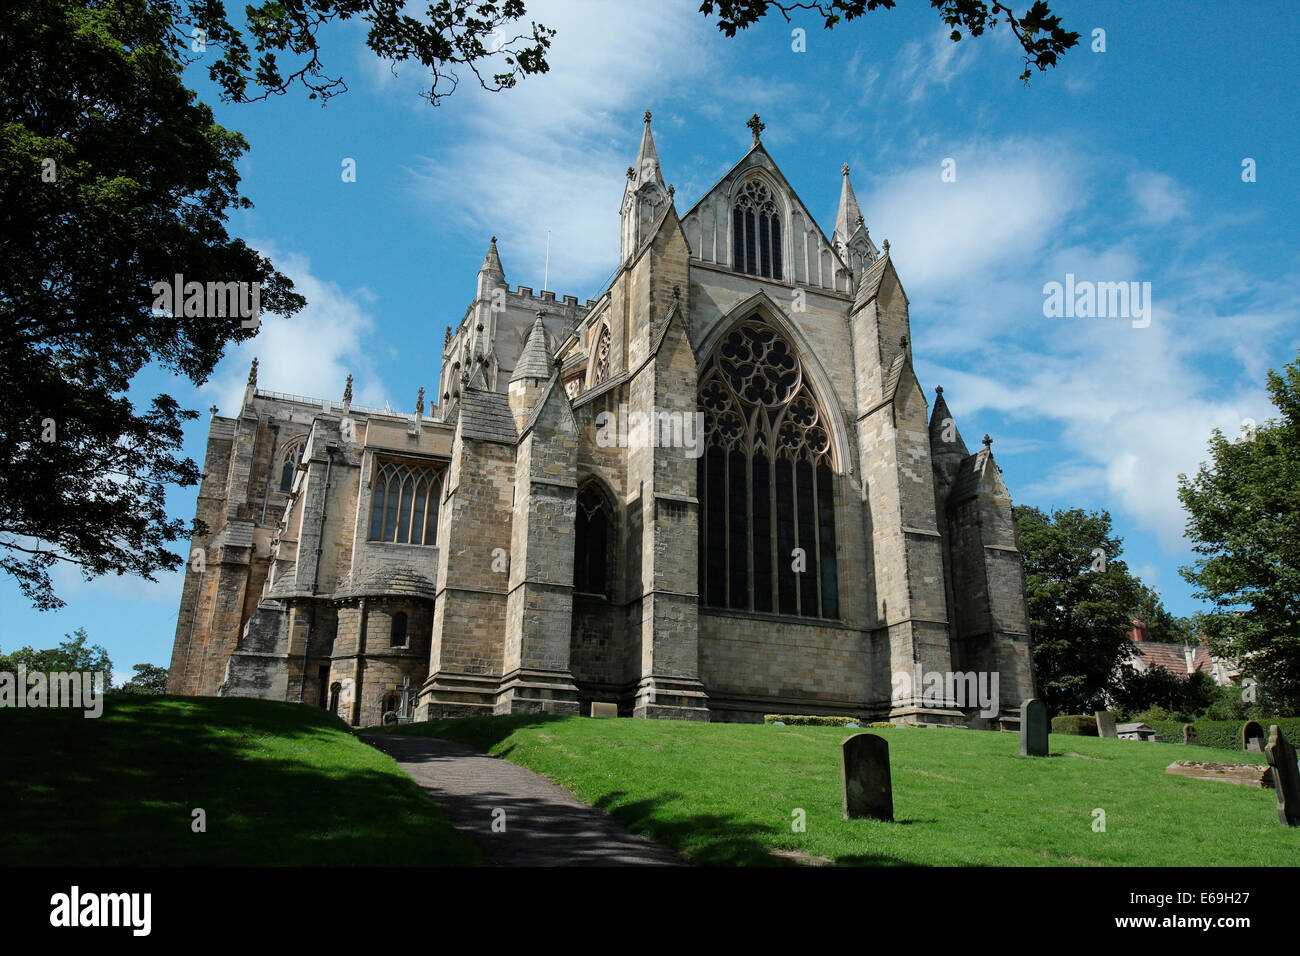 La cathédrale de Ripon dans la petite ville de North Yorkshire, Angleterre Ripon. Banque D'Images